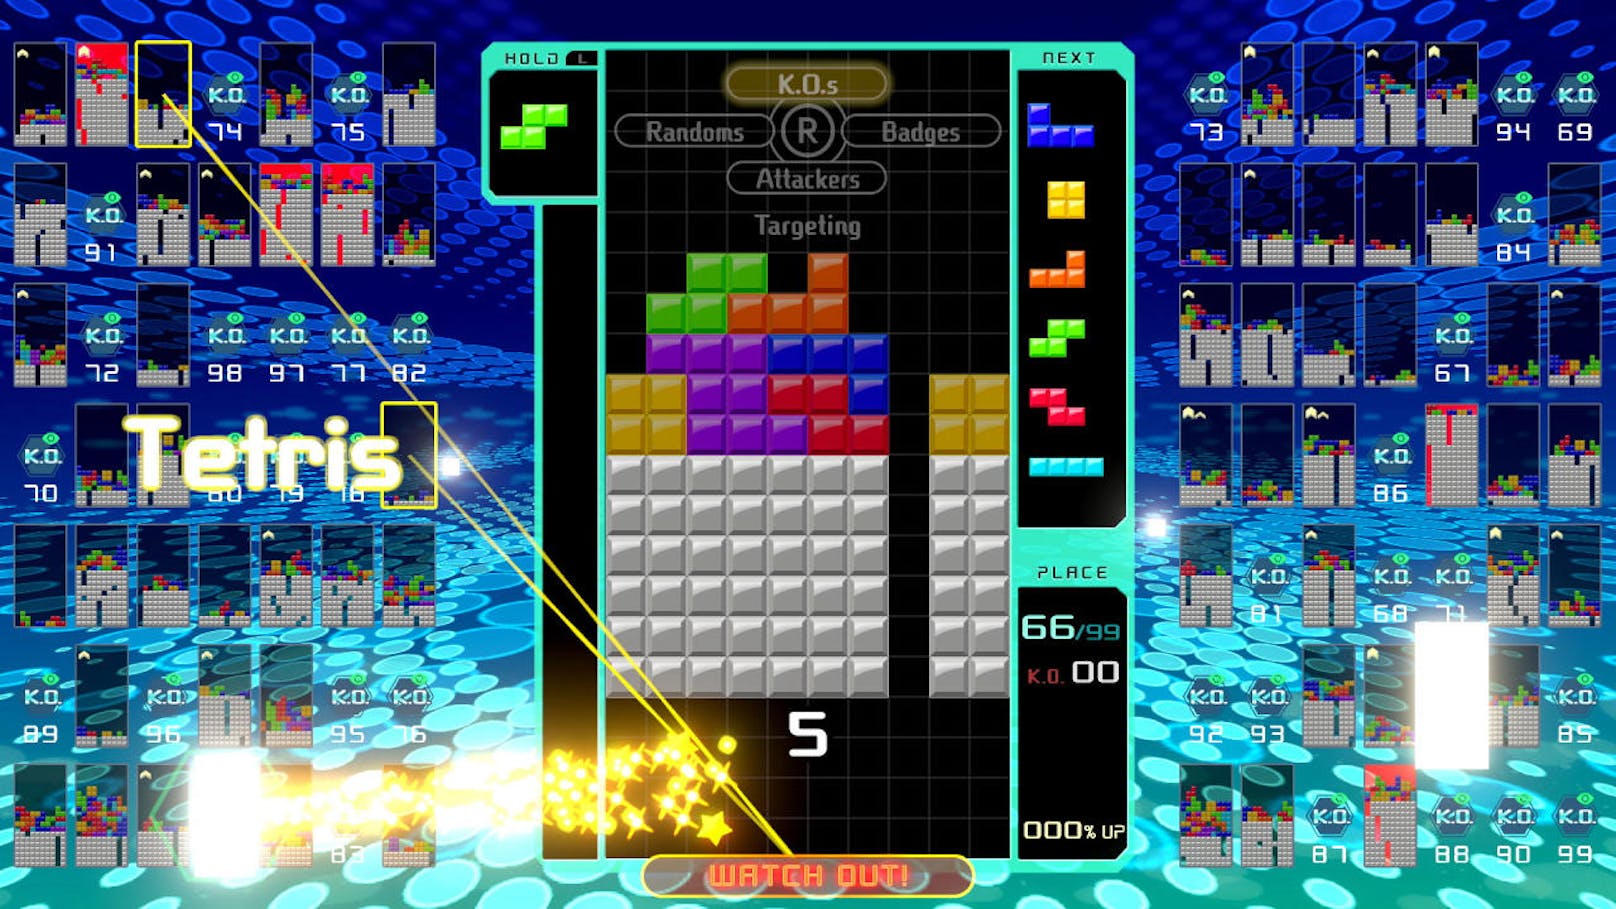 Fans von Tetris 99 können sich heute gleich über mehrere Ankündigungen freuen. Vom 12. Juli (9 Uhr) bis zum 16. Juli (8.59 Uhr) läuft das nächste große Tetris 99-Online-Event. Der Tetris 99 Grand Prix 5 steht ganz im Zeichen des heiß erwarteten Splatoon 2 Final Fest. Wer noch keine Gelegenheit hatte, sich vom Puzzlefieber packen zu lassen, sollte den 20. September 2019 im Blick behalten. An diesem Tag erscheint eine physische Verkaufsversion von Tetris 99. Diese beinhaltet neben dem Hauptspiel auch die Inhalte des kostenpflichtigen Big Block DLC und eine 12-monatige Mitgliedschaft für Nintendo Switch Online.